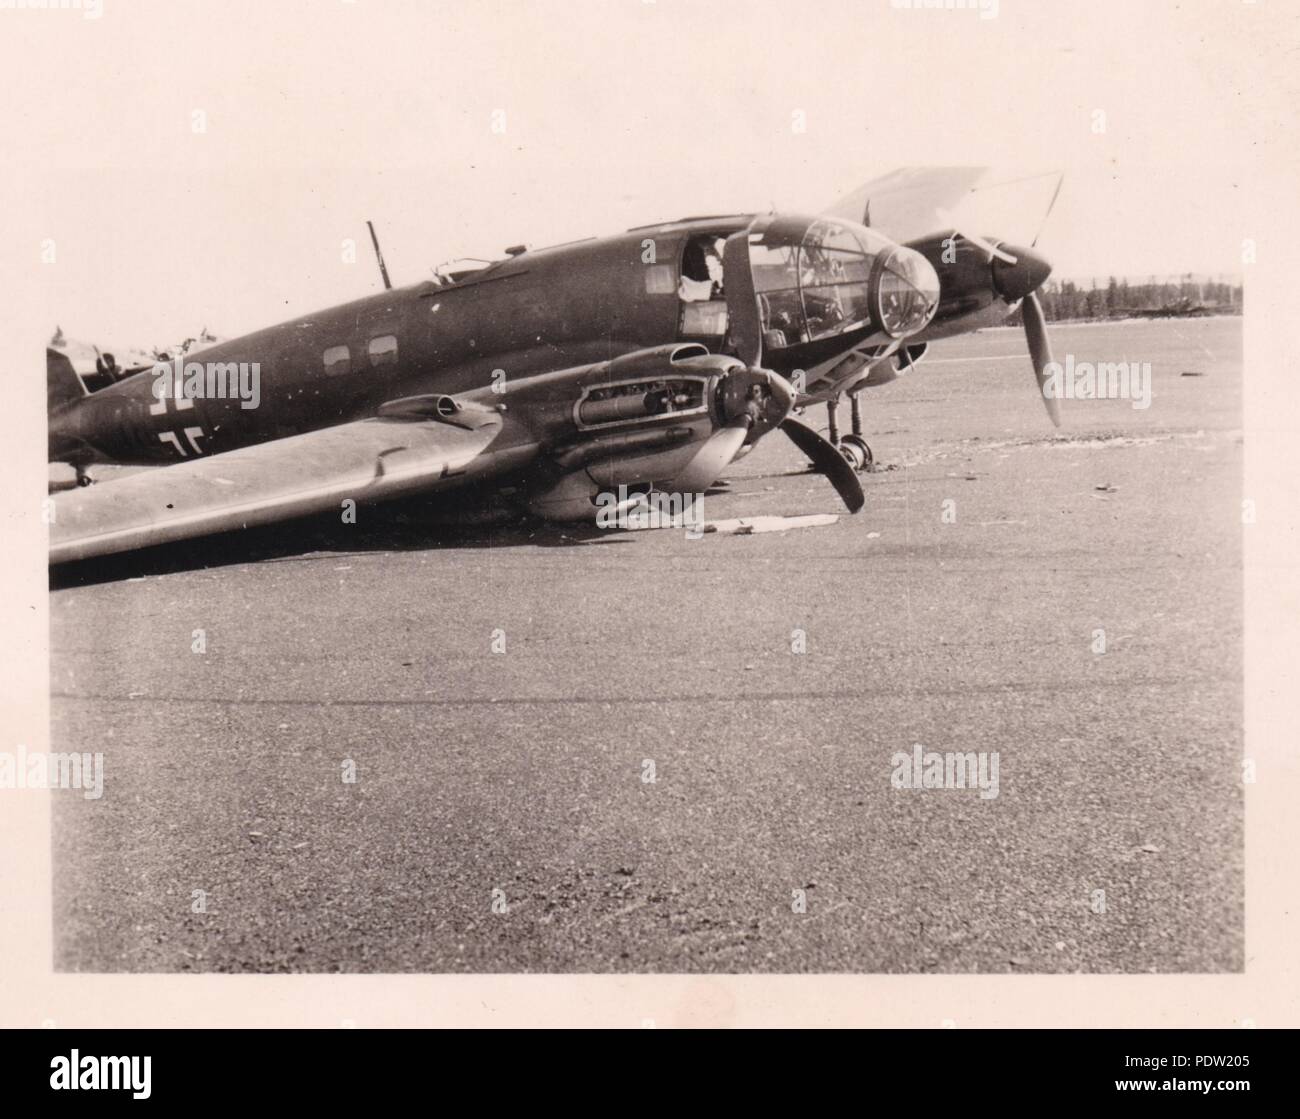 Bild aus dem Fotoalbum von Oberfeldwebel Karl gendner von 1. Staffel, Kampfgeschwader 40:abgestürzte Heinkel He 111 1 H+LS des 8./KG 26, crash-im Oslo Flugplatz gelandet von OBLT. Horst von Besseron am 9. April 1940, nachdem sie von der Flak getroffen. Gendner war ein Pilot mit 3./KGzbV 1 zu dieser Zeit. Stockfoto